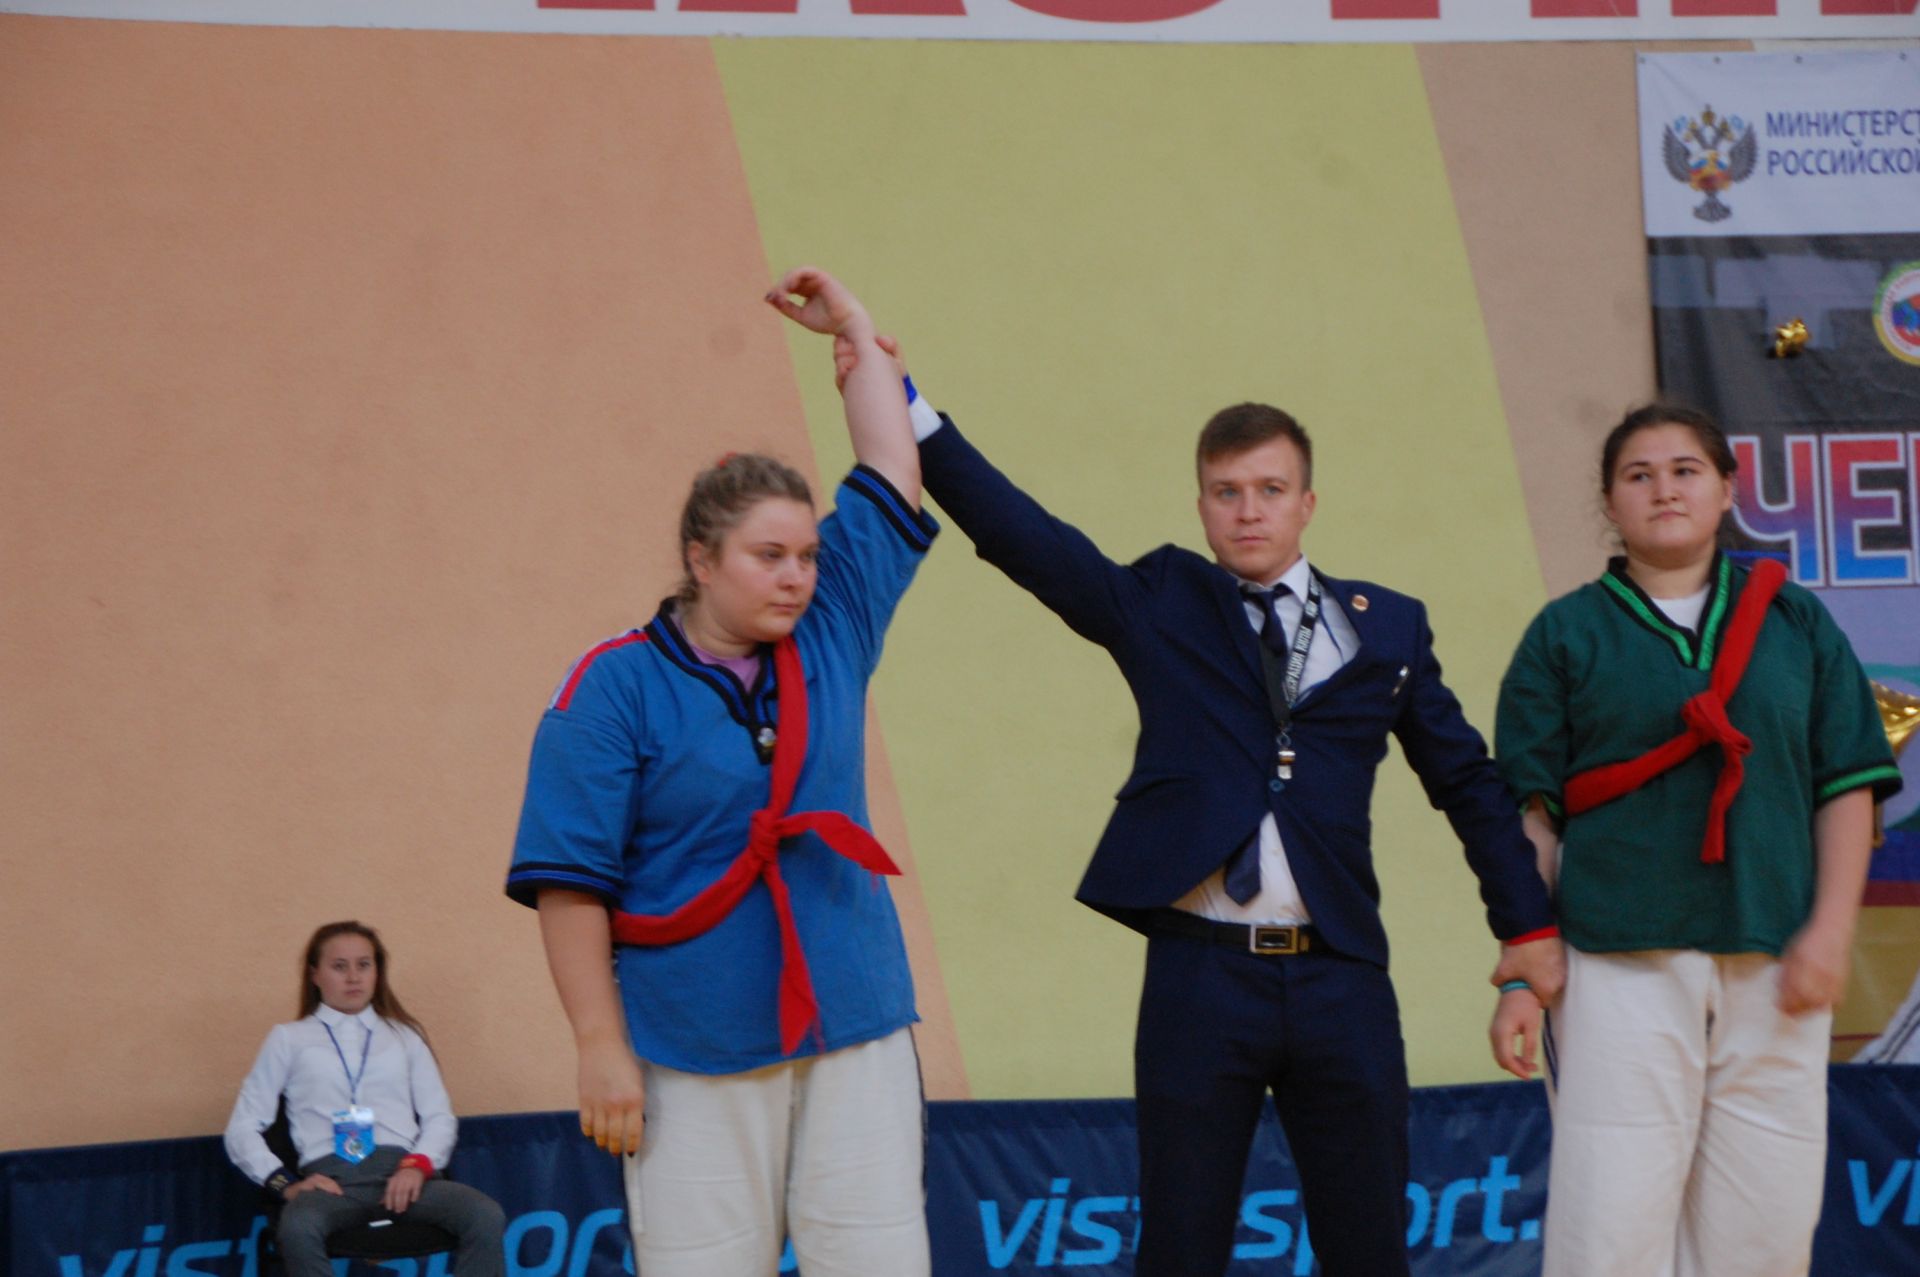 Фоторепортаж: В Заинске открылся Чемпионат России по борьбе на поясах